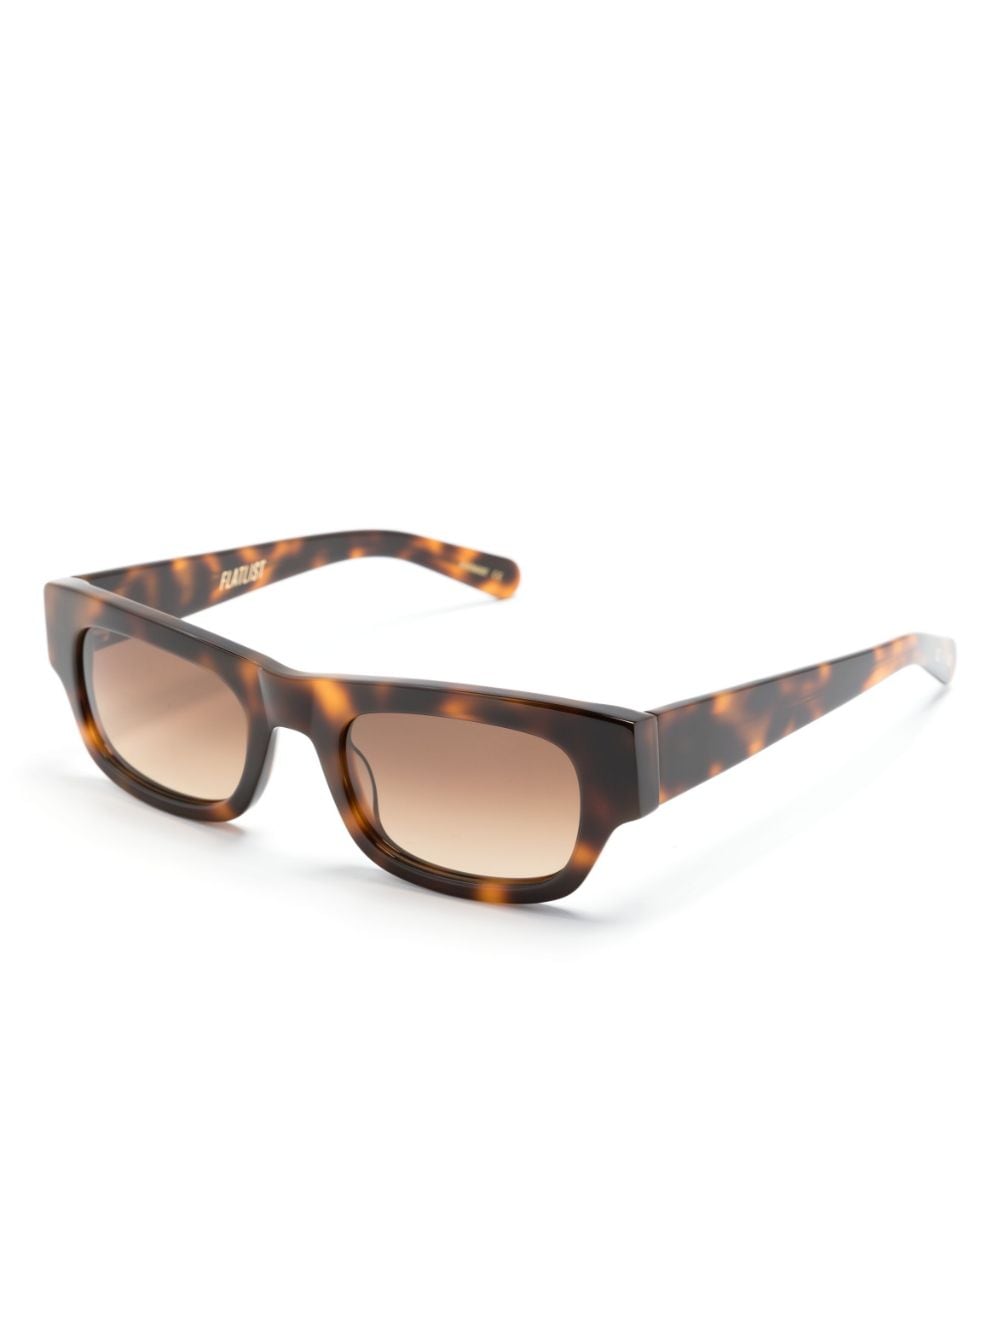 FLATLIST Hanky square-frame sunglasses - Bruin